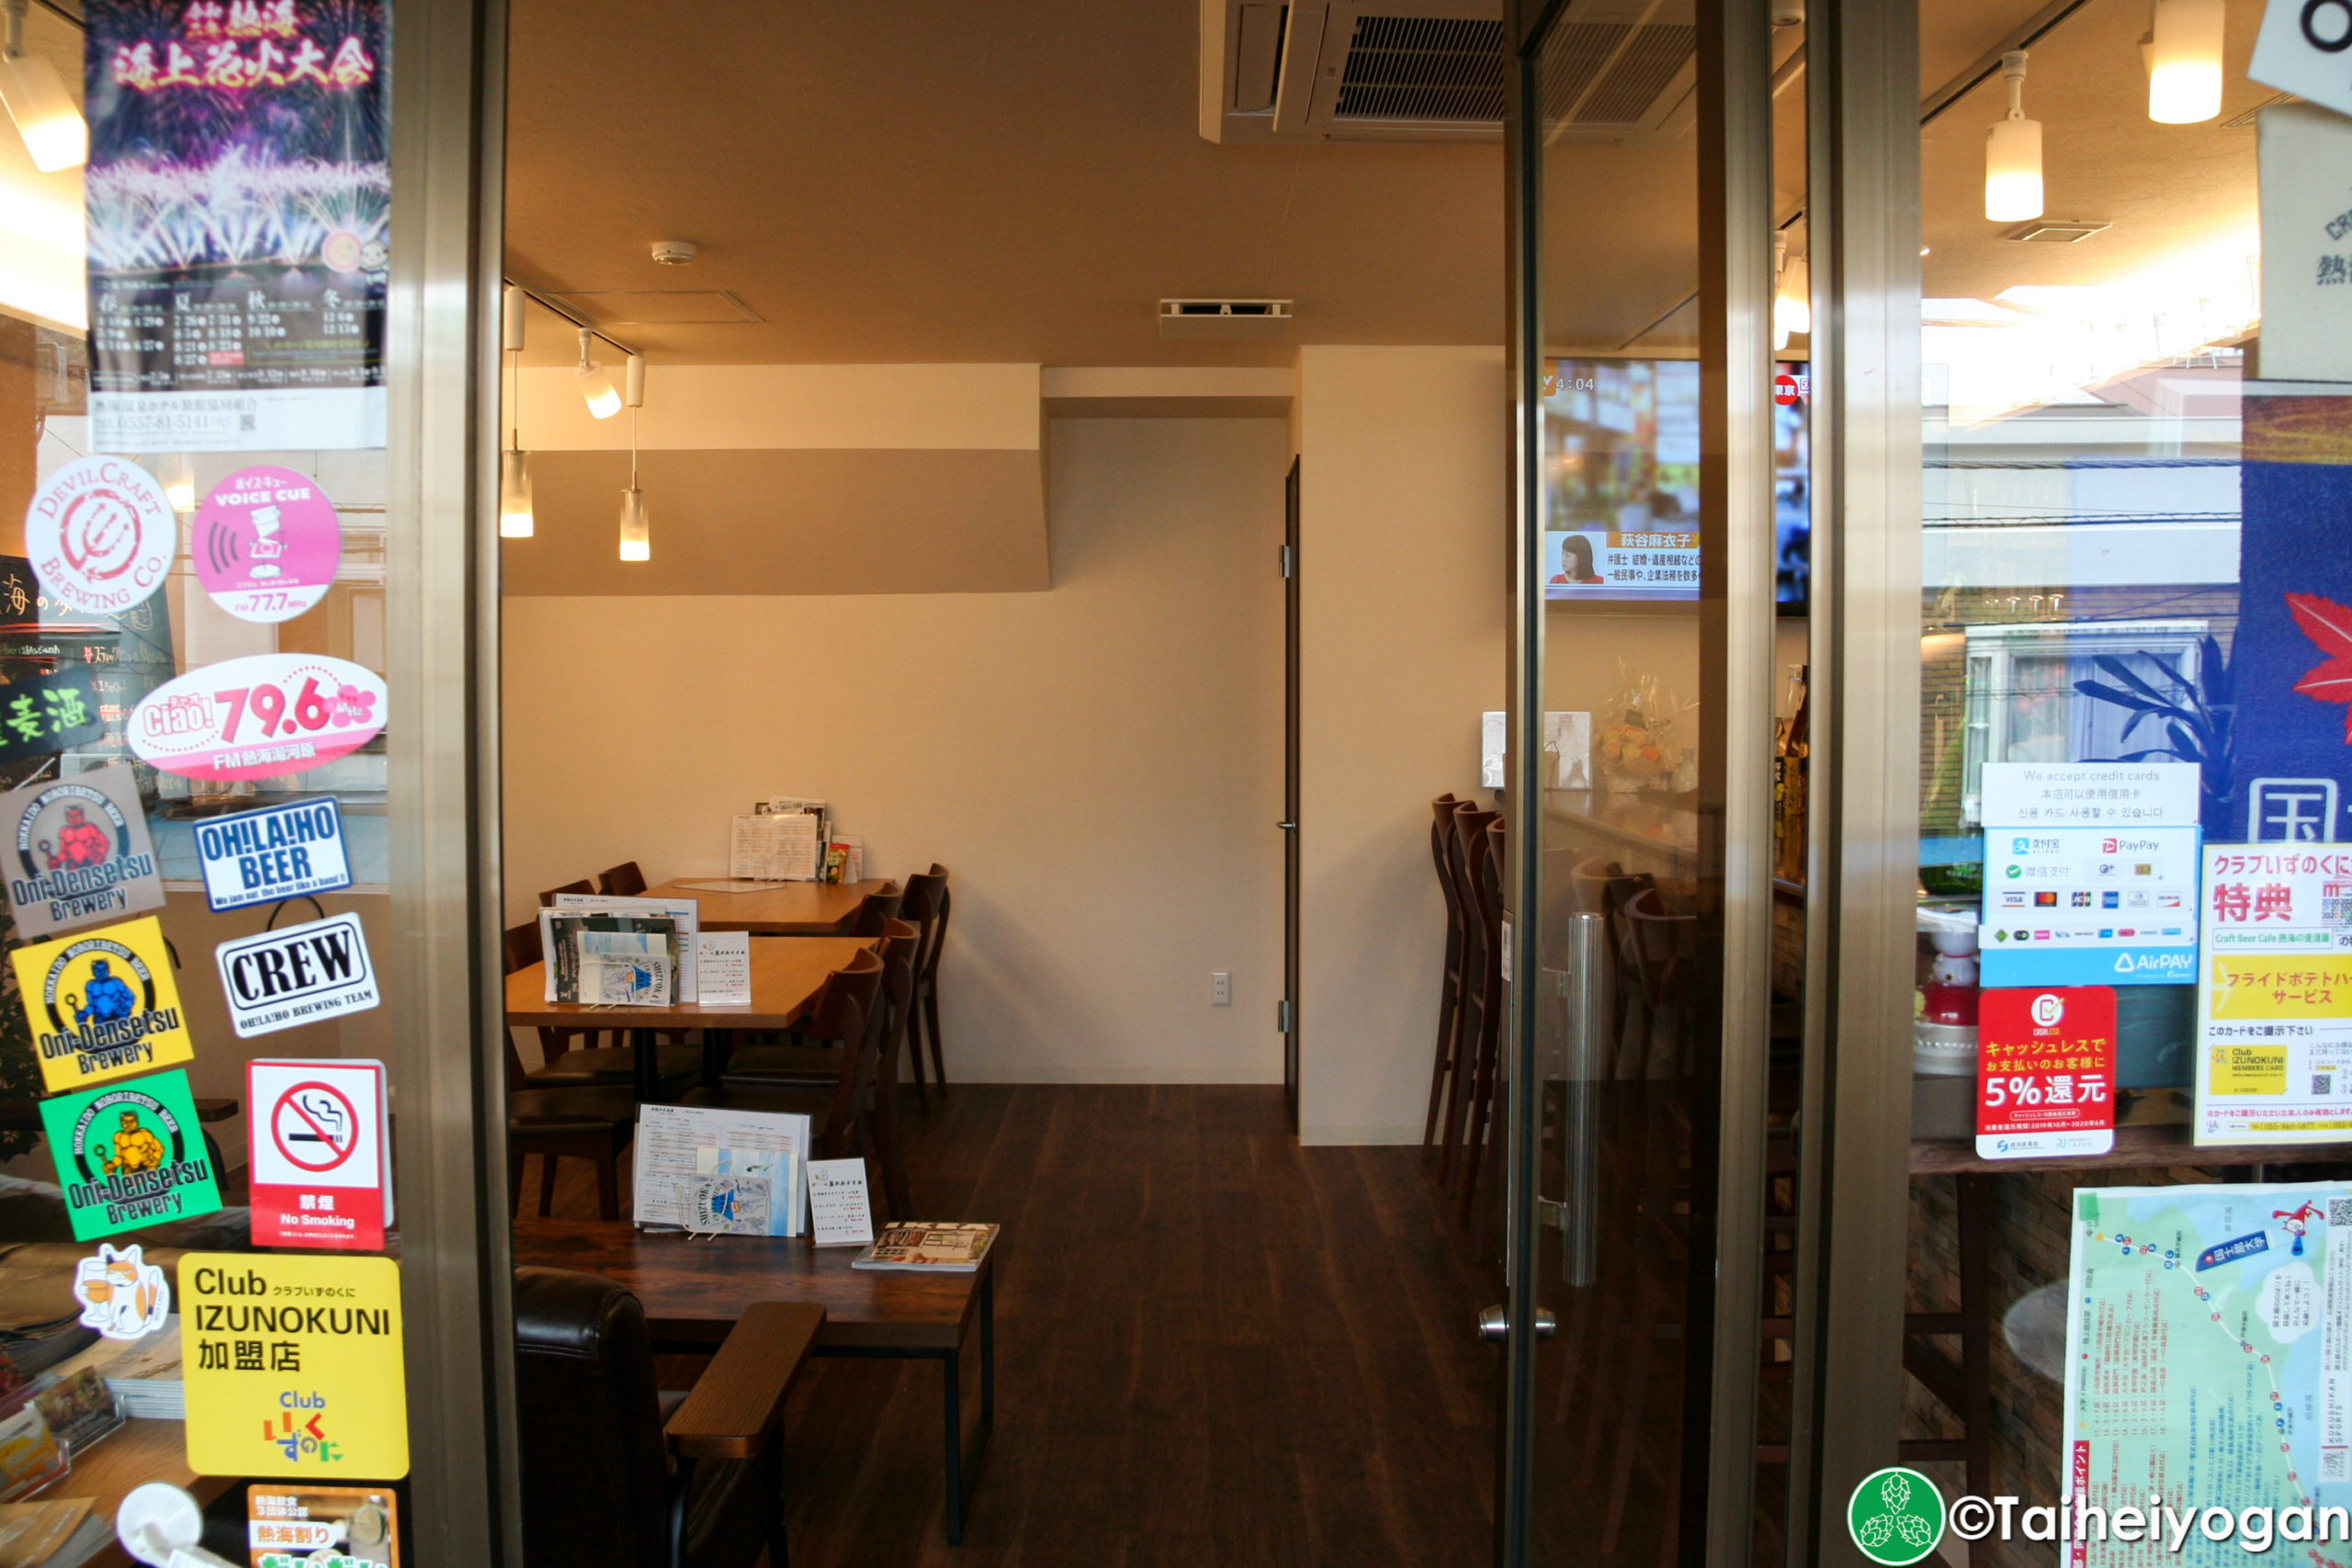 Craft Beer Café 熱海の麥酒屋・Craft Beer Café Atami Mugishuya - Interior